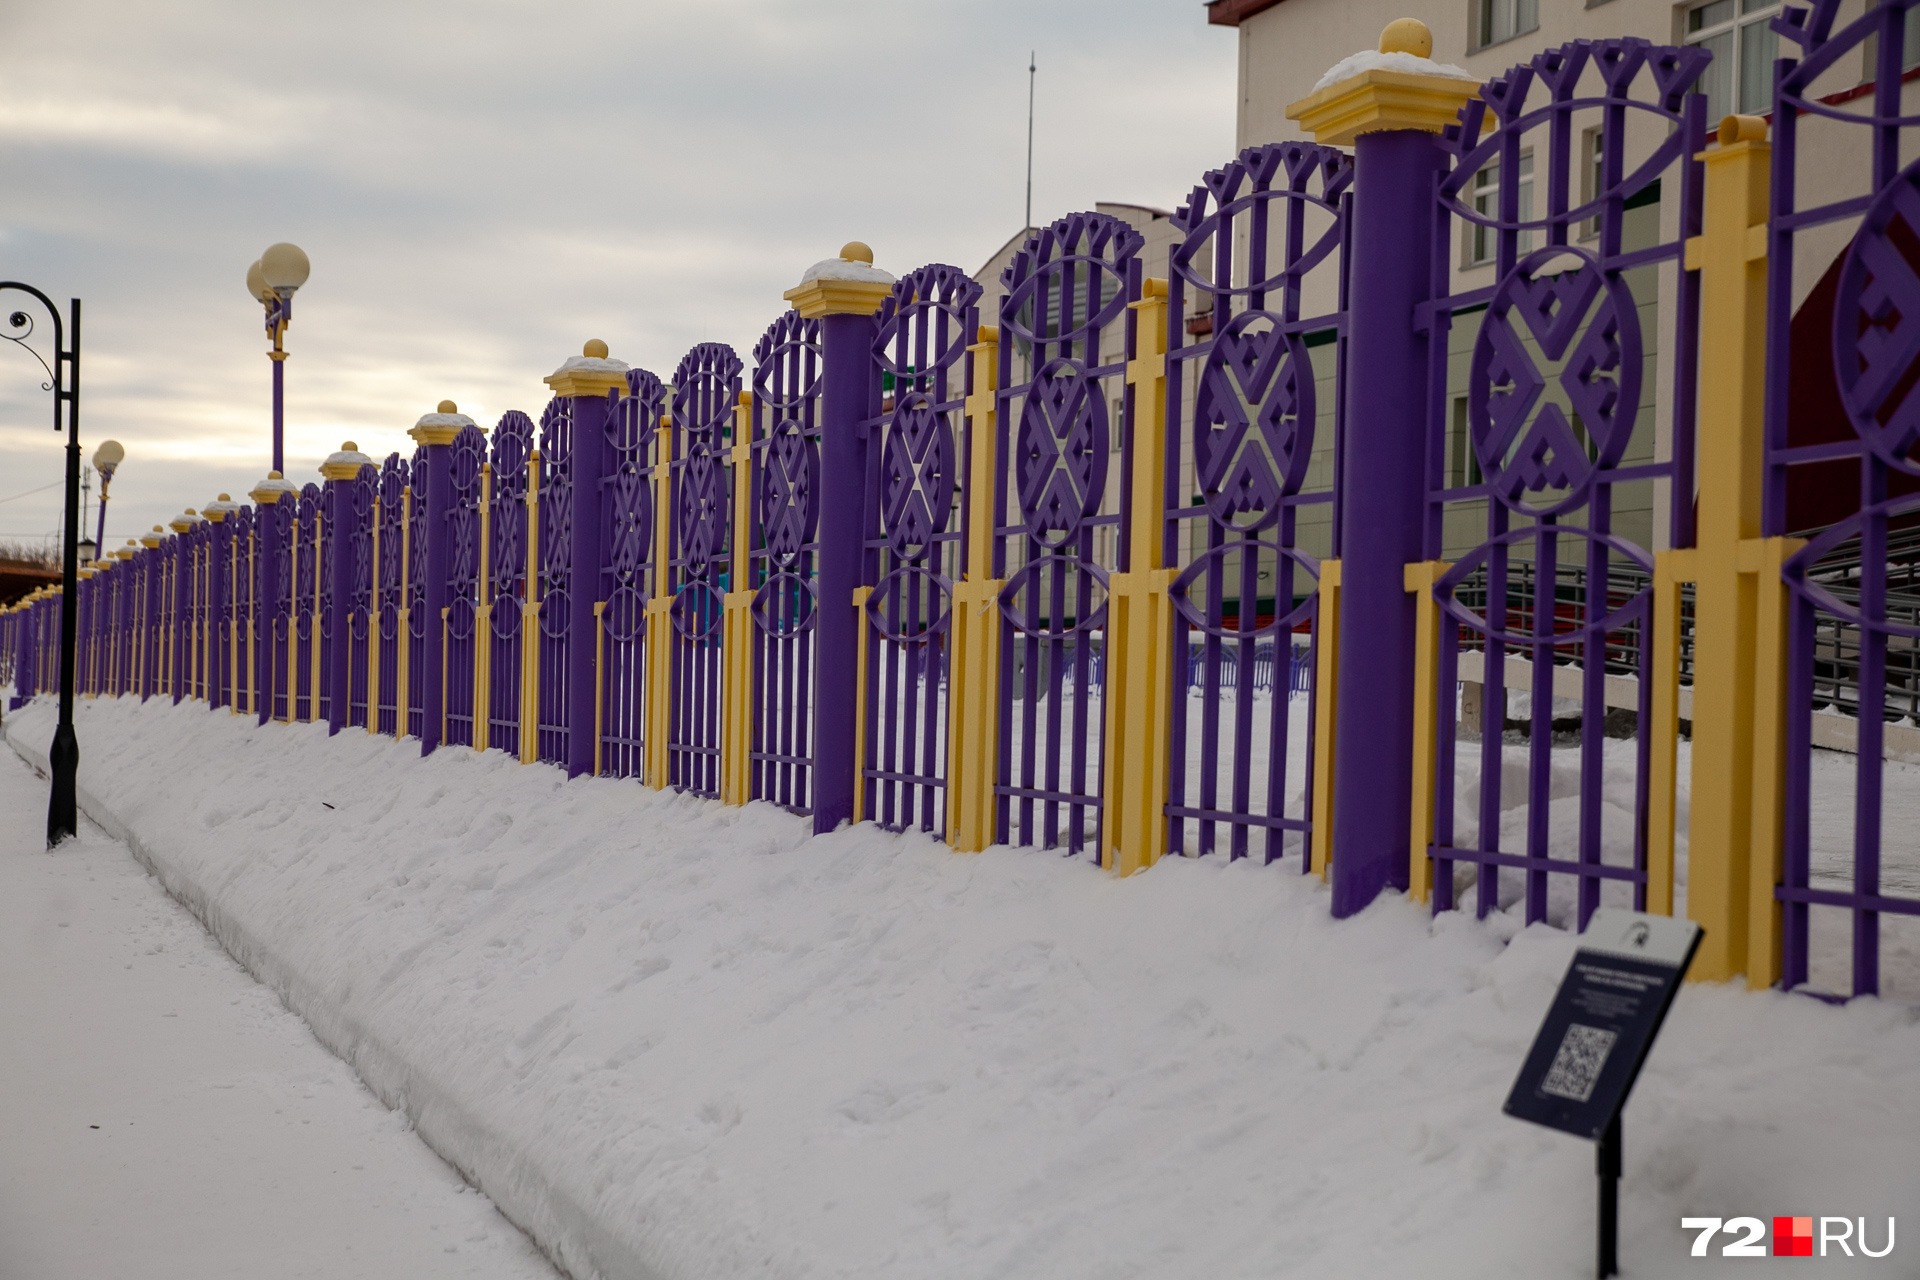 Посмотрите на этот забавный забор с северным орнаментом. По классике жанра он еще и ярких цветов: чтобы не грустить в белоснежном городе